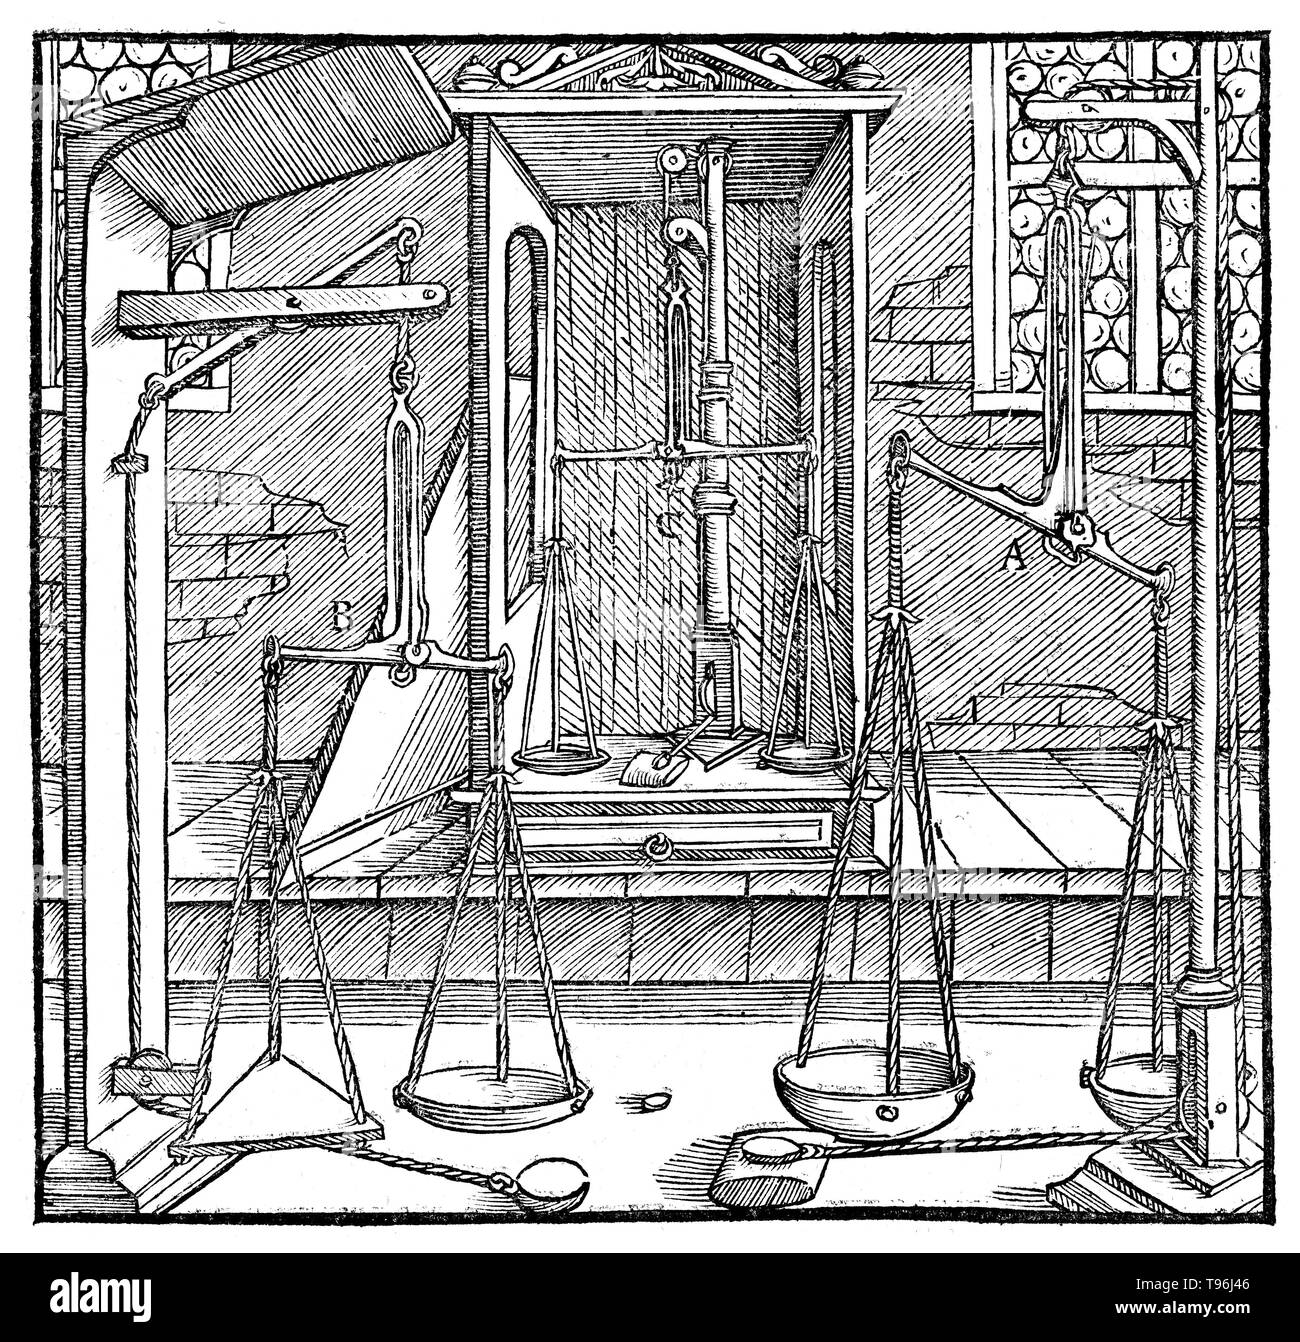 Xilografia da De re metallica. Tre coppie di scale. Georgius Agricola (24 marzo 1494 - 21 novembre 1555) era uno studioso tedesco e scienziato, noto come " padre della mineralogia''. Nel 1556 ha pubblicato il suo libro De re metallica, un trattato sulla coltivazione mineraria e la metallurgia estrattiva, con xilografie che illustra i processi per estrarre i minerali dal terreno e metallo dal minerale, e i molti usi di mulini ad acqua nel settore minerario. Foto Stock